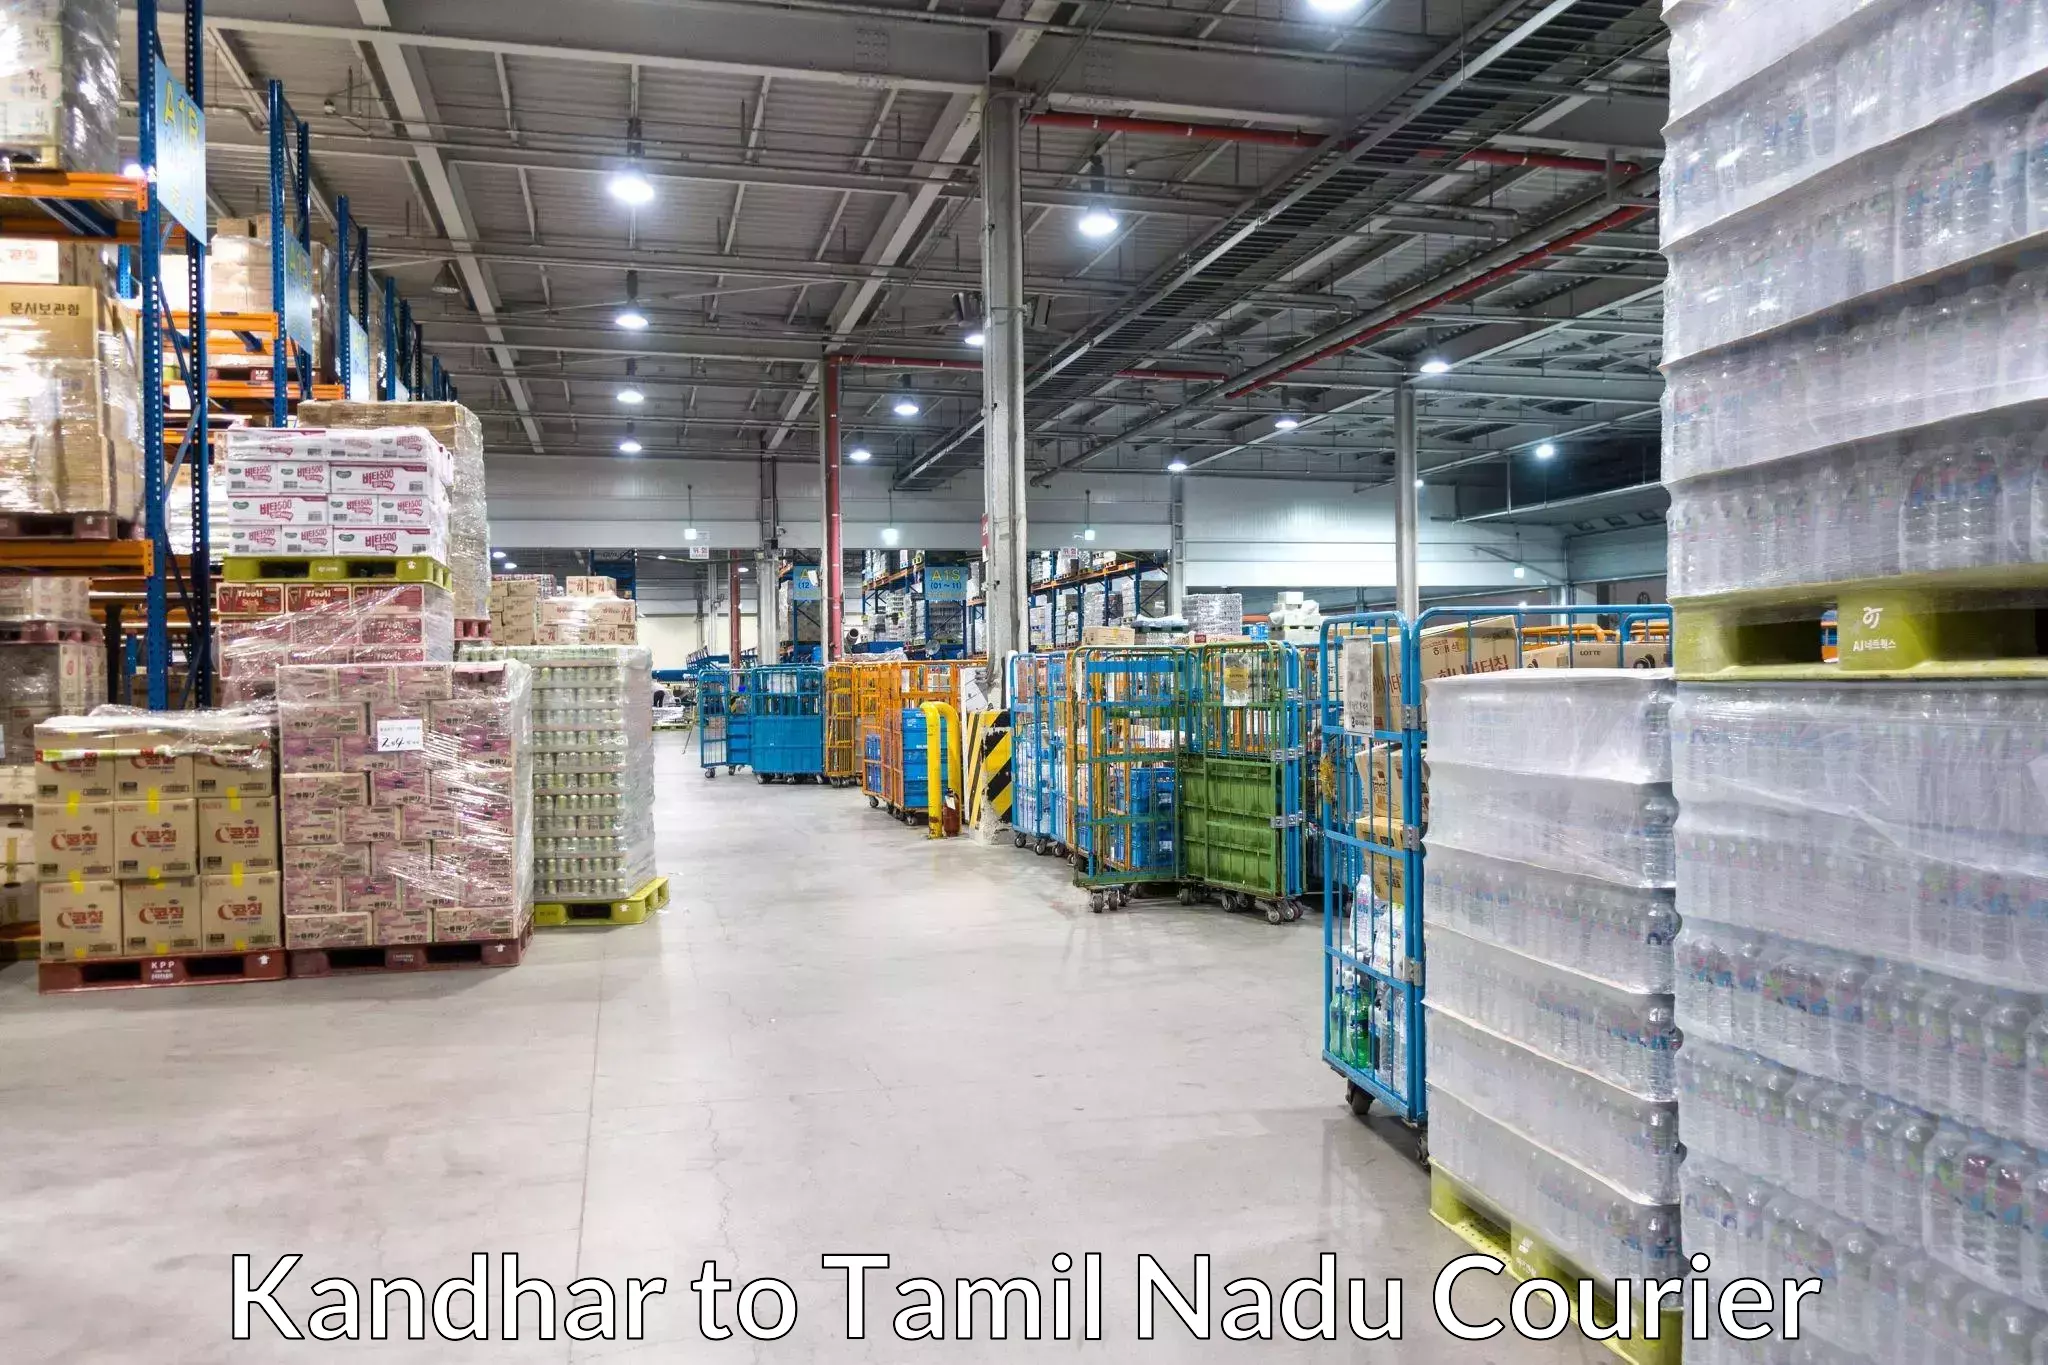 Professional furniture movers Kandhar to Bodinayakanur